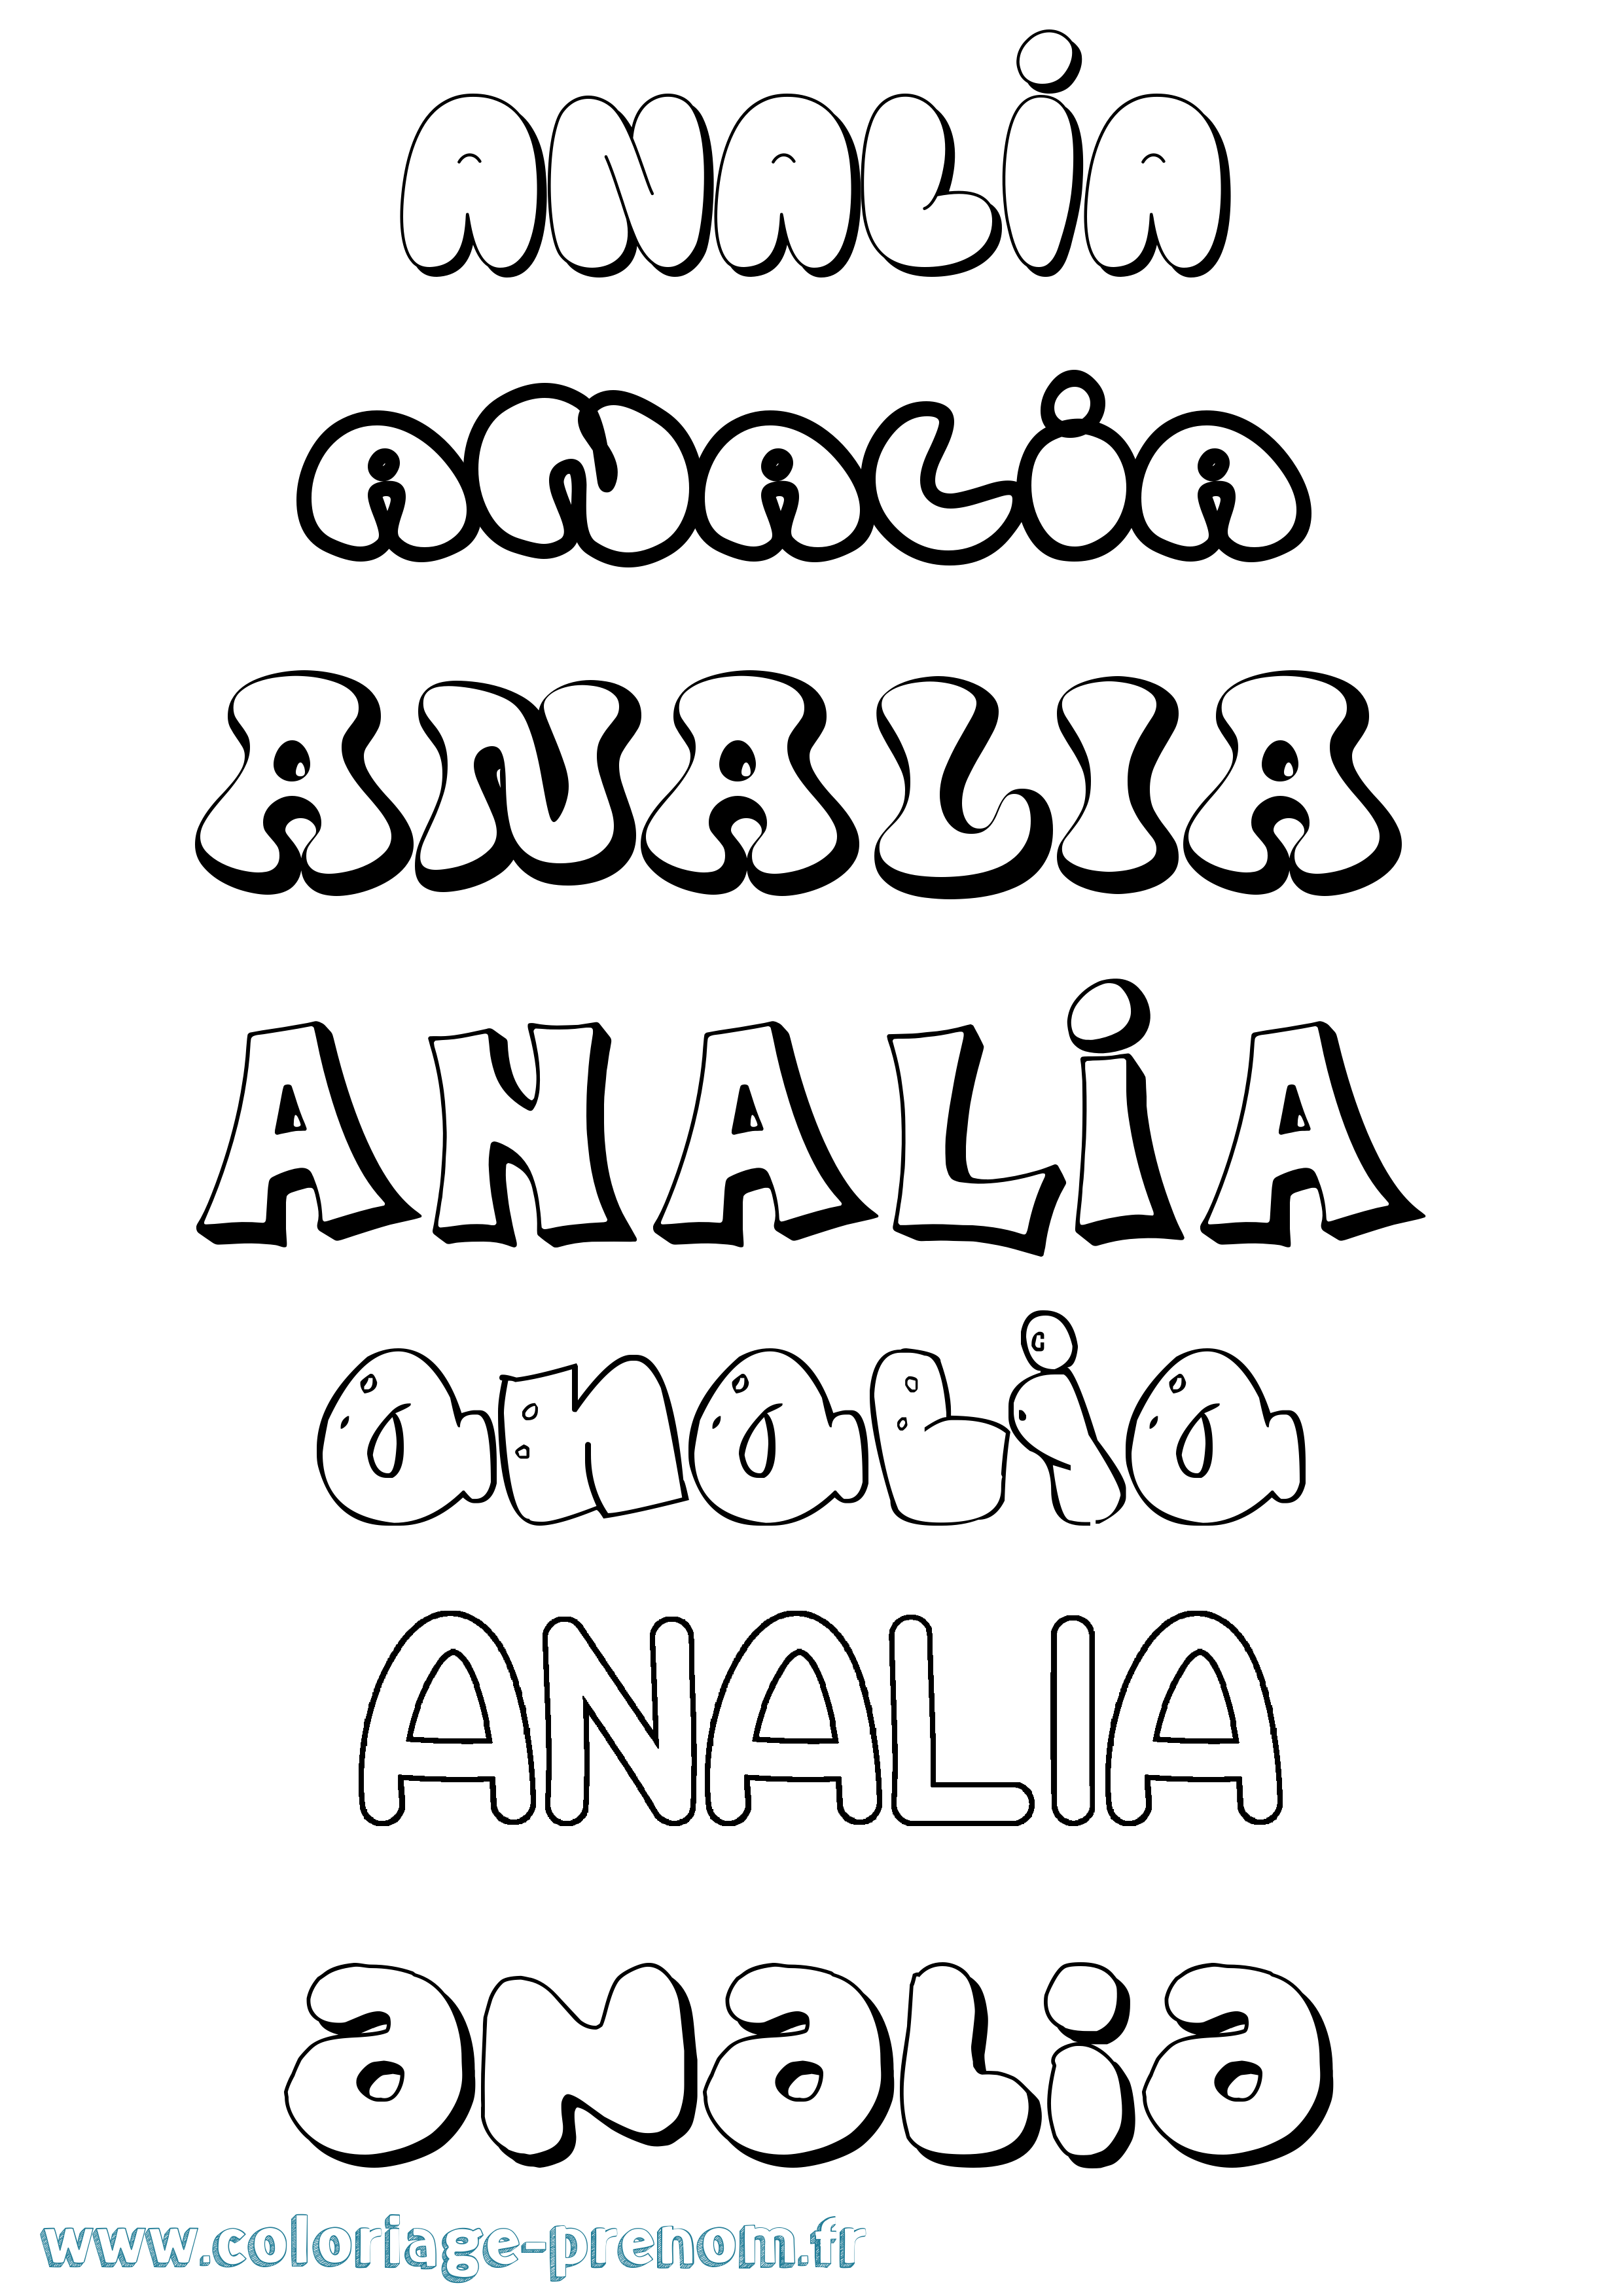 Coloriage prénom Analia Bubble